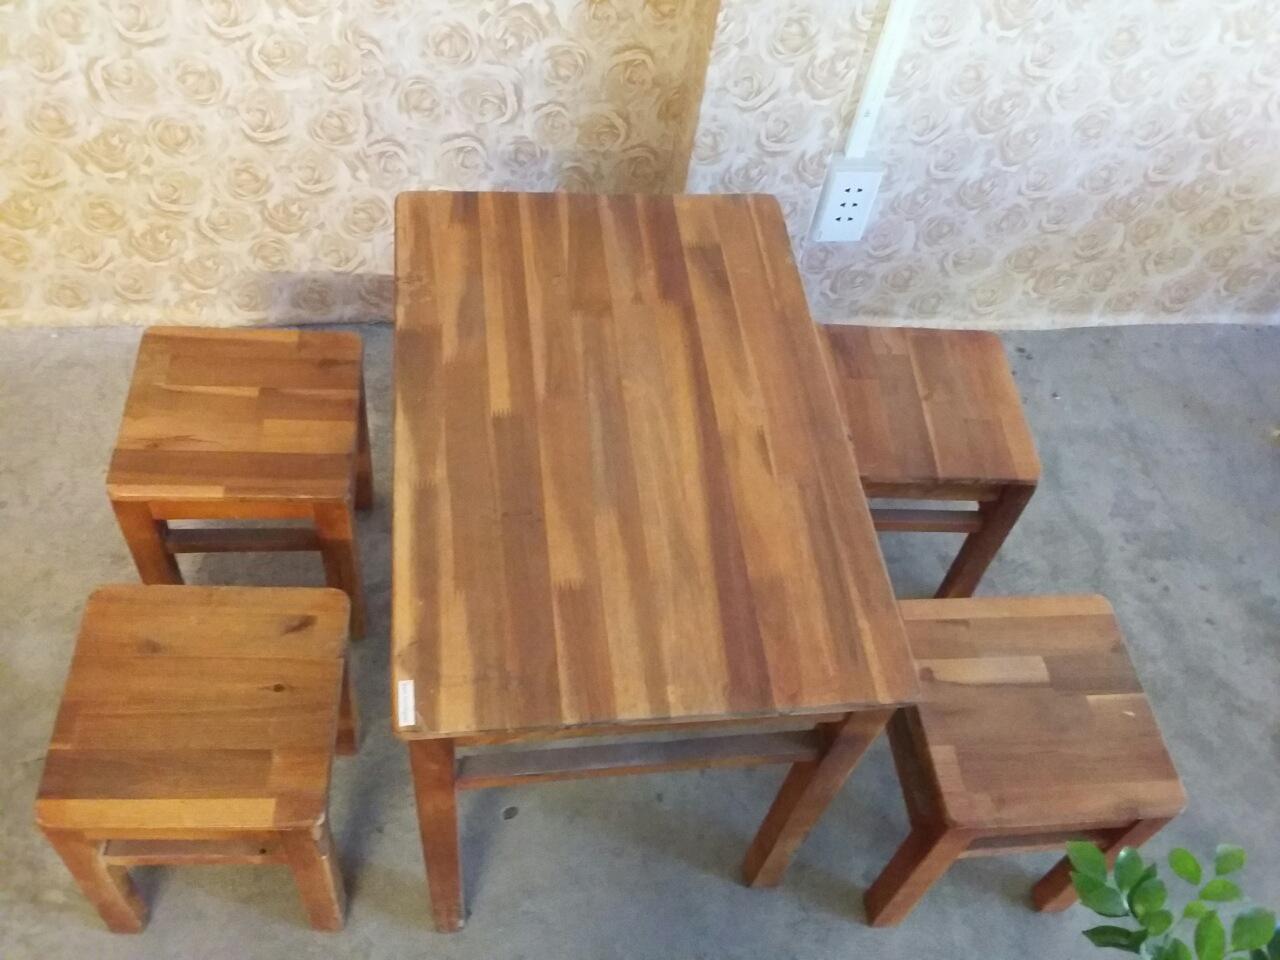 mua bàn ghế gỗ cũ giá rẻ tphcm